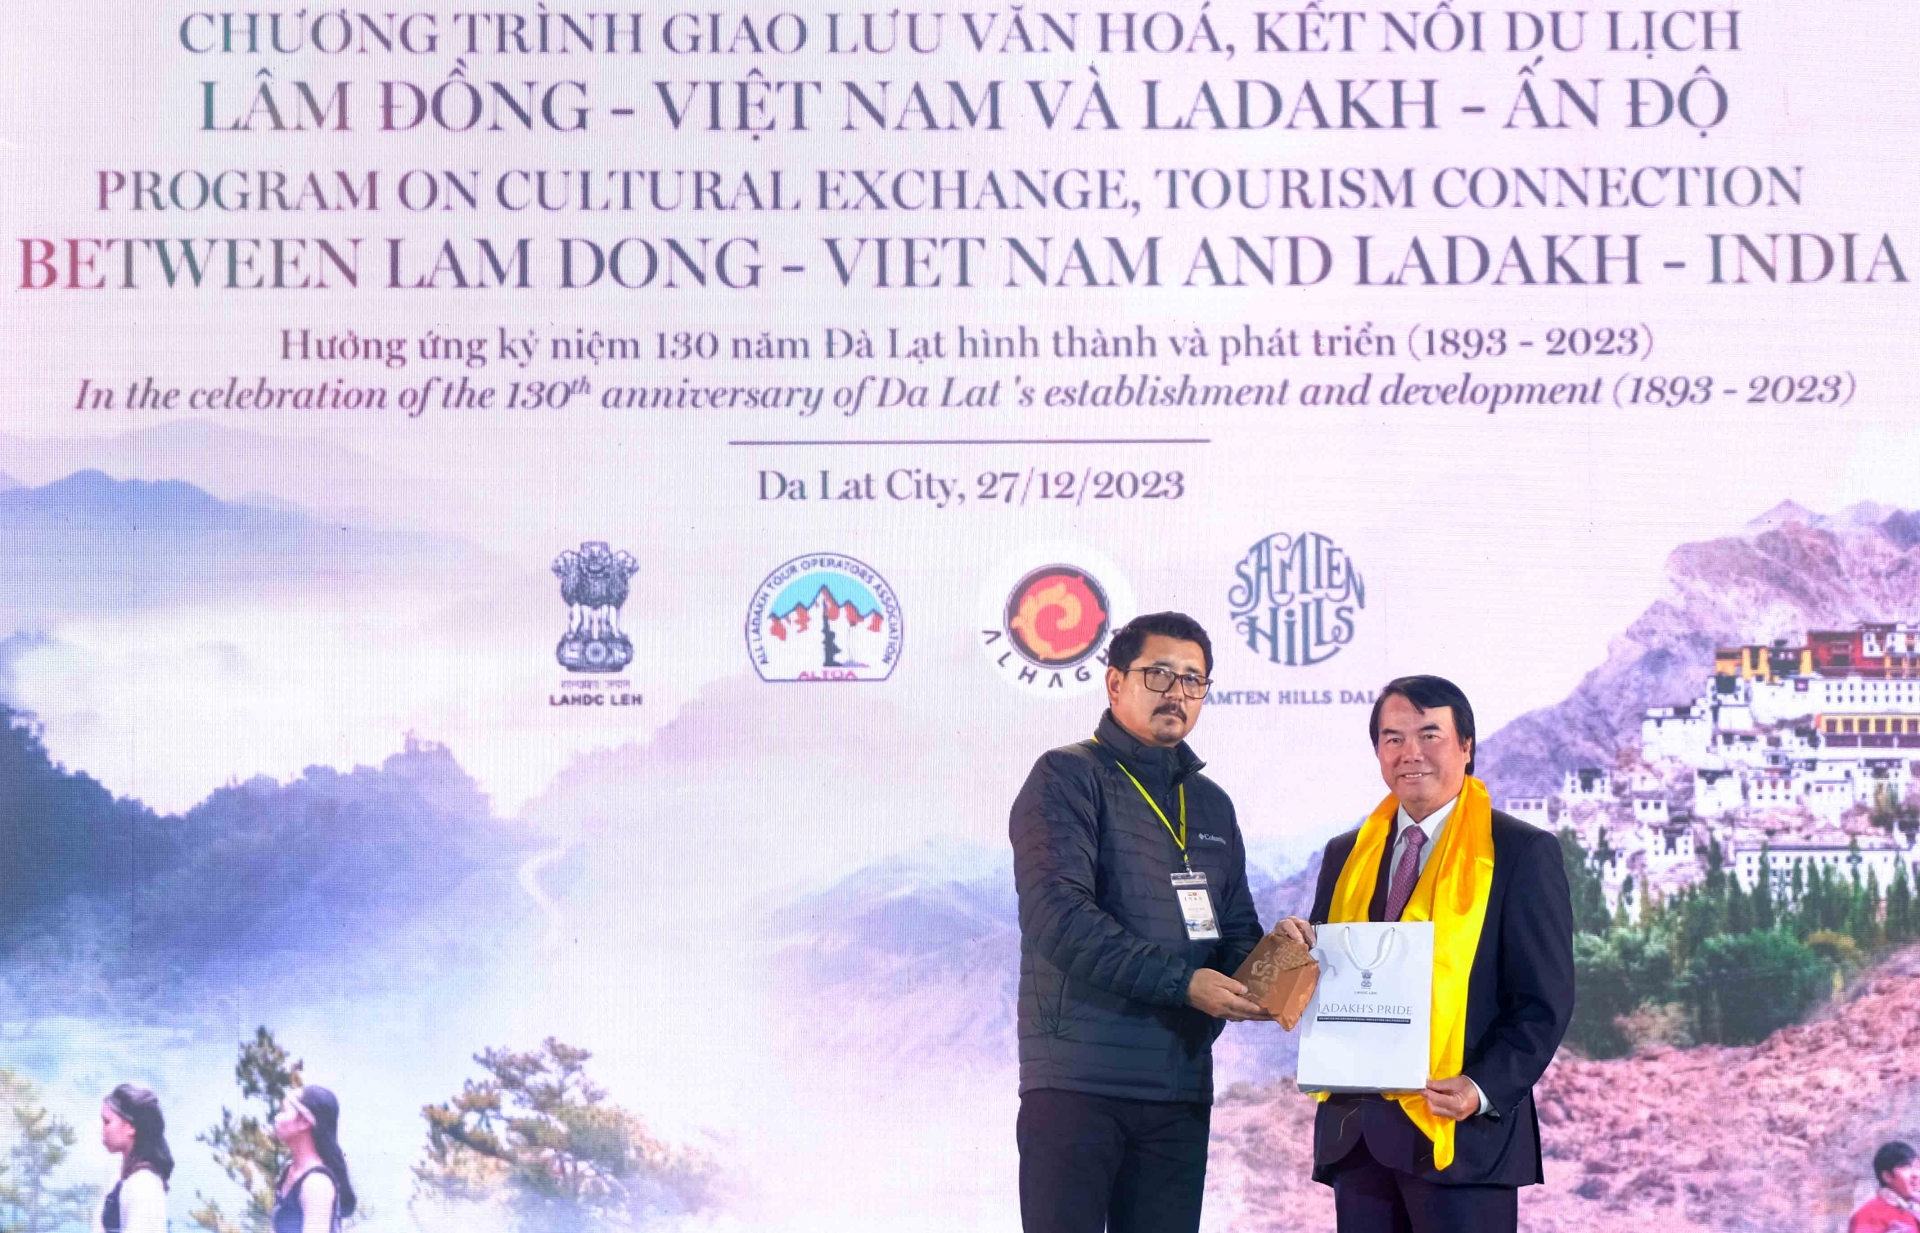 Đại diện Đoàn doanh nhân đến từ Ladakh trao quà tặng Phó Chủ tịch UBND tỉnh Lâm Đồng 